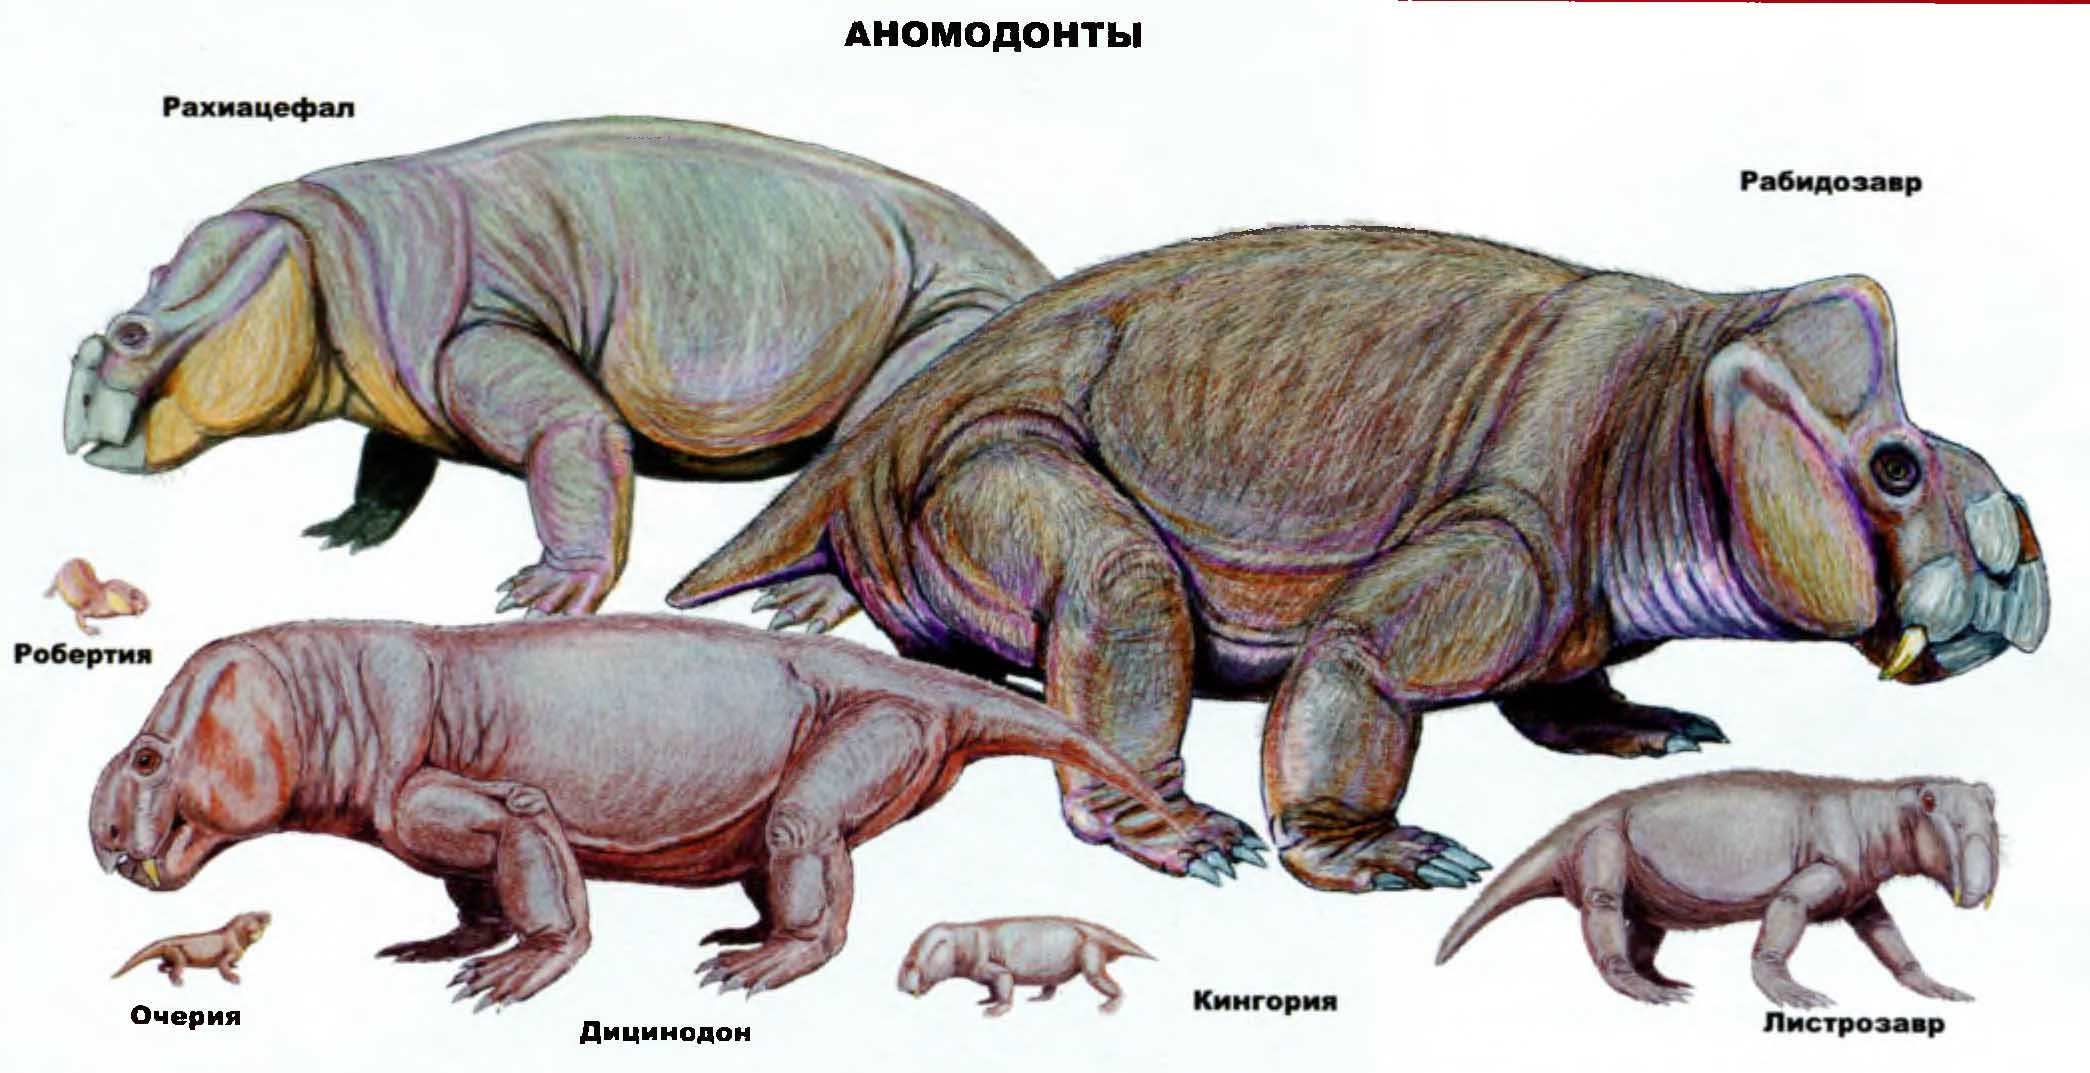 Аномодонты: рахиацефал, робертия, очерия, дицинодон, кингория, листоразвр, рабидозавр.